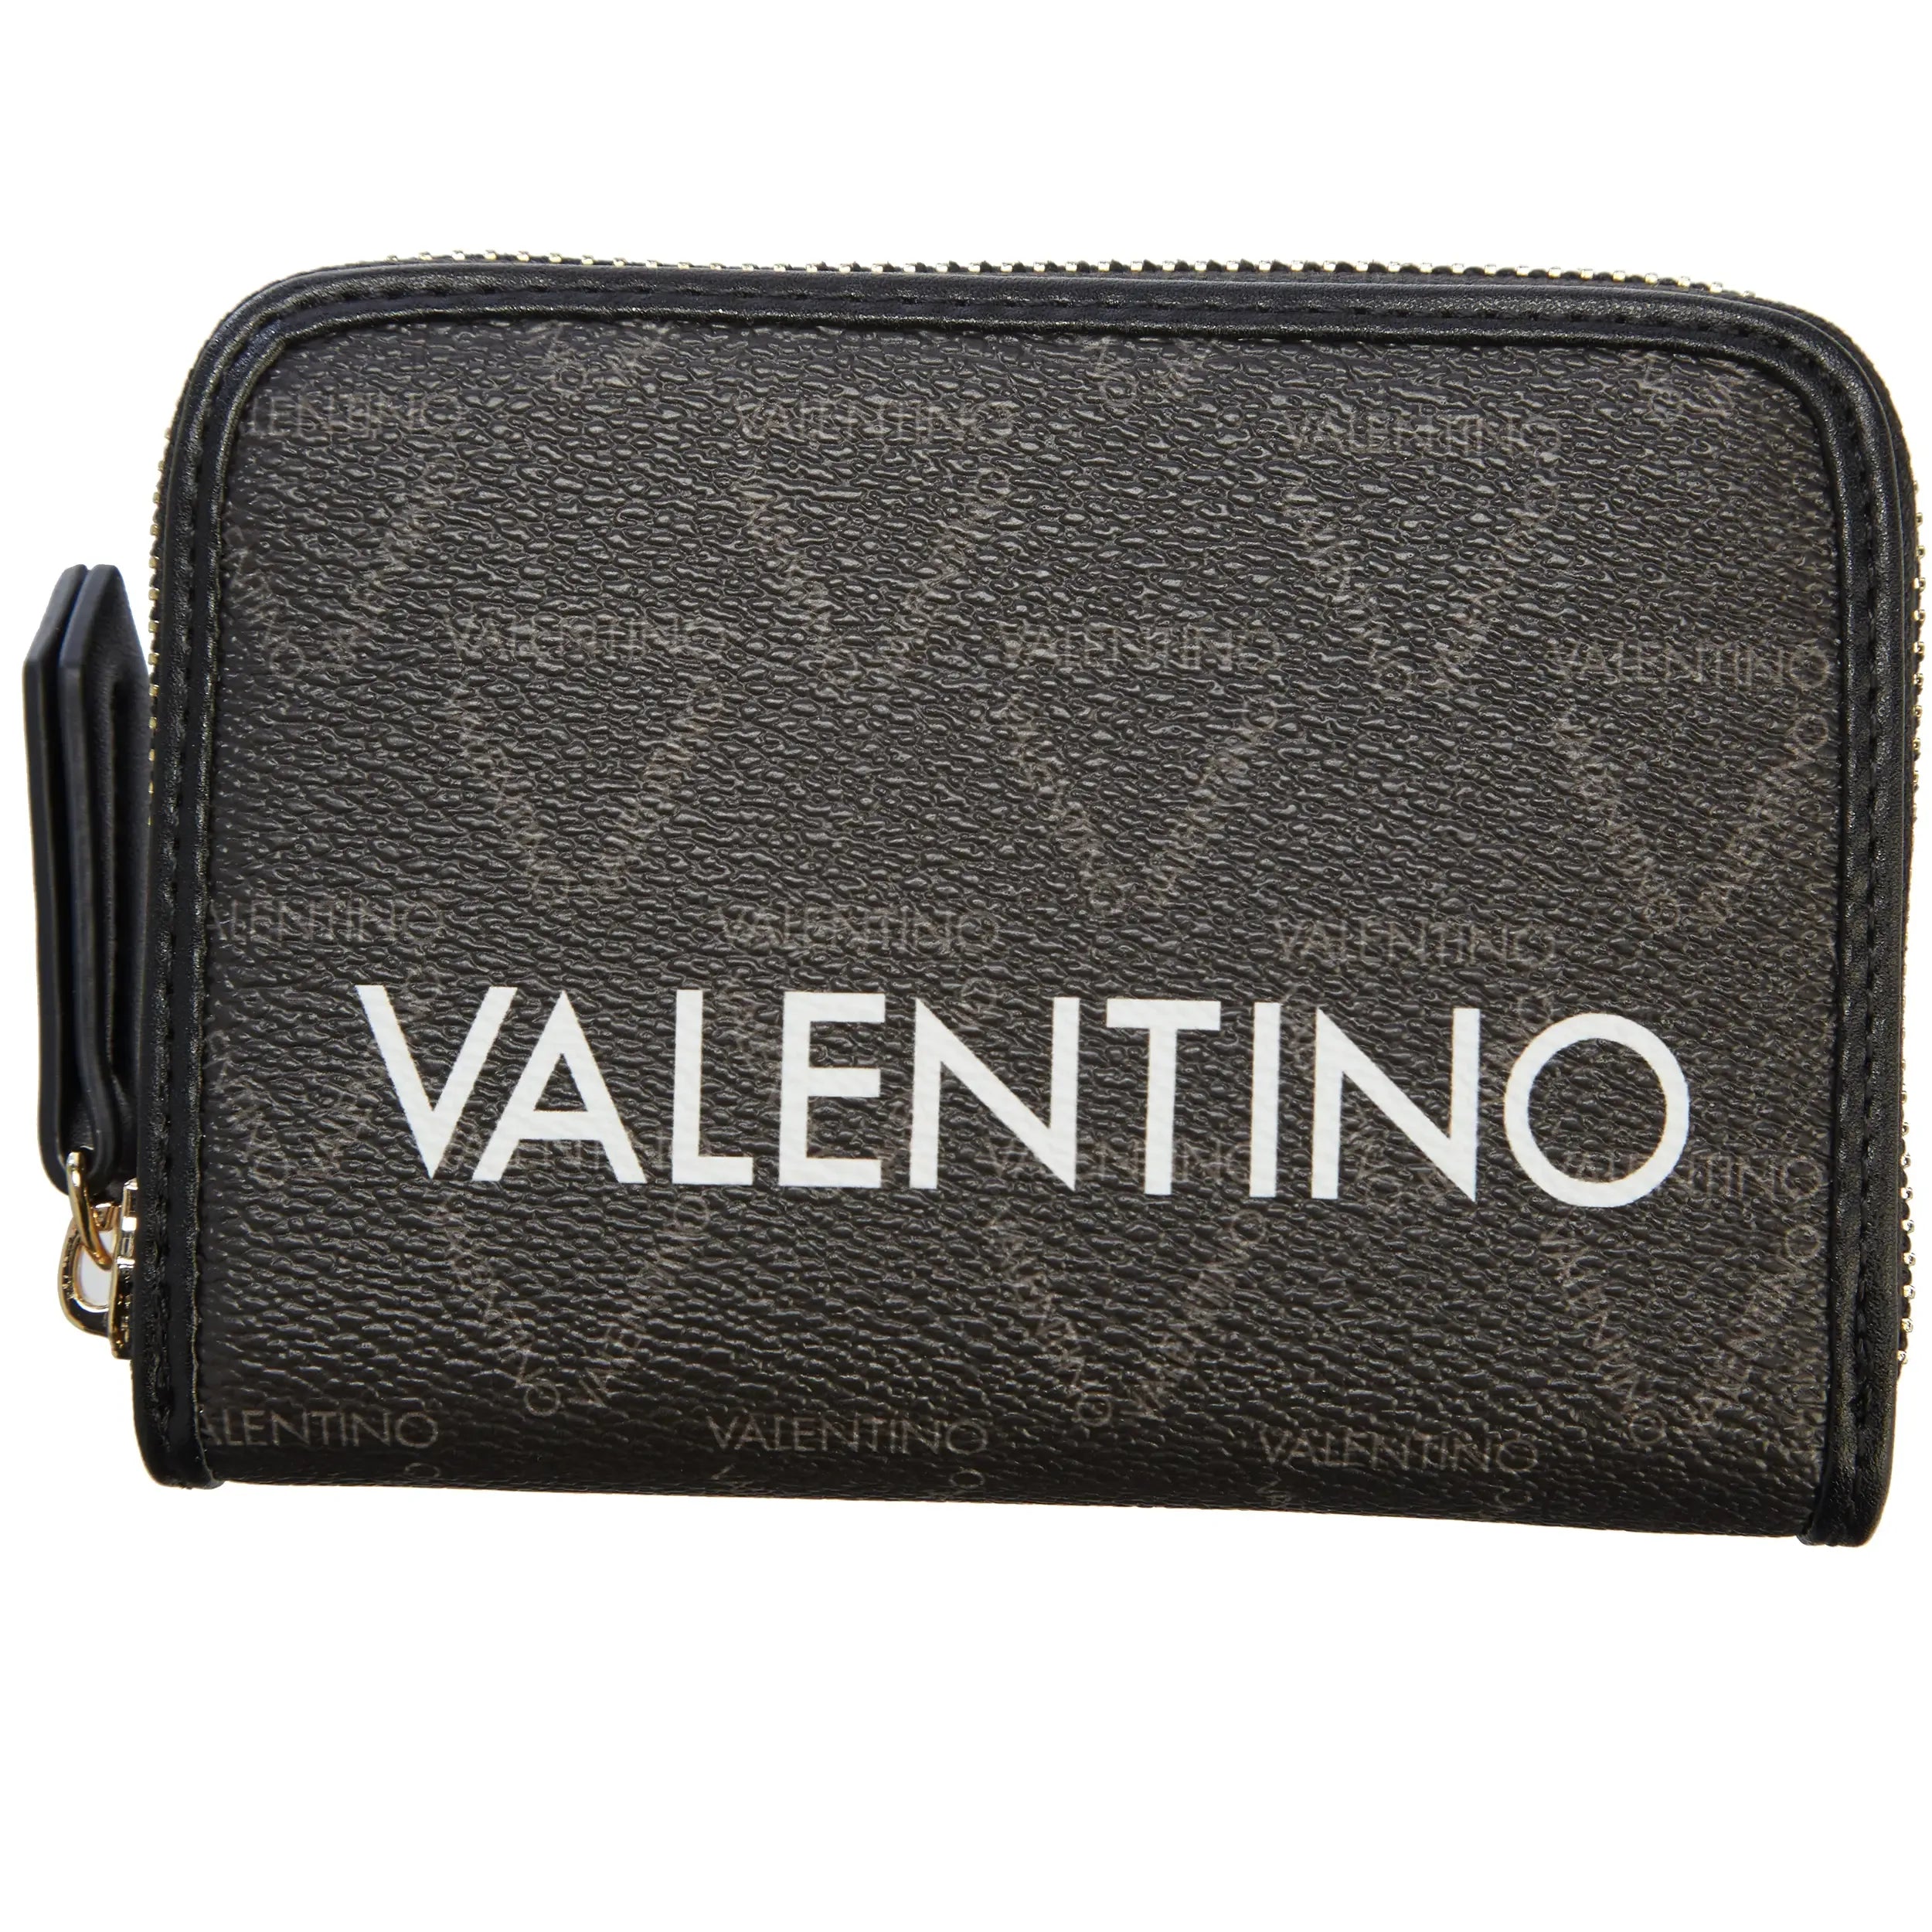 Valentino Bags Liuto wallet 13 cm - Nero/Multicolor